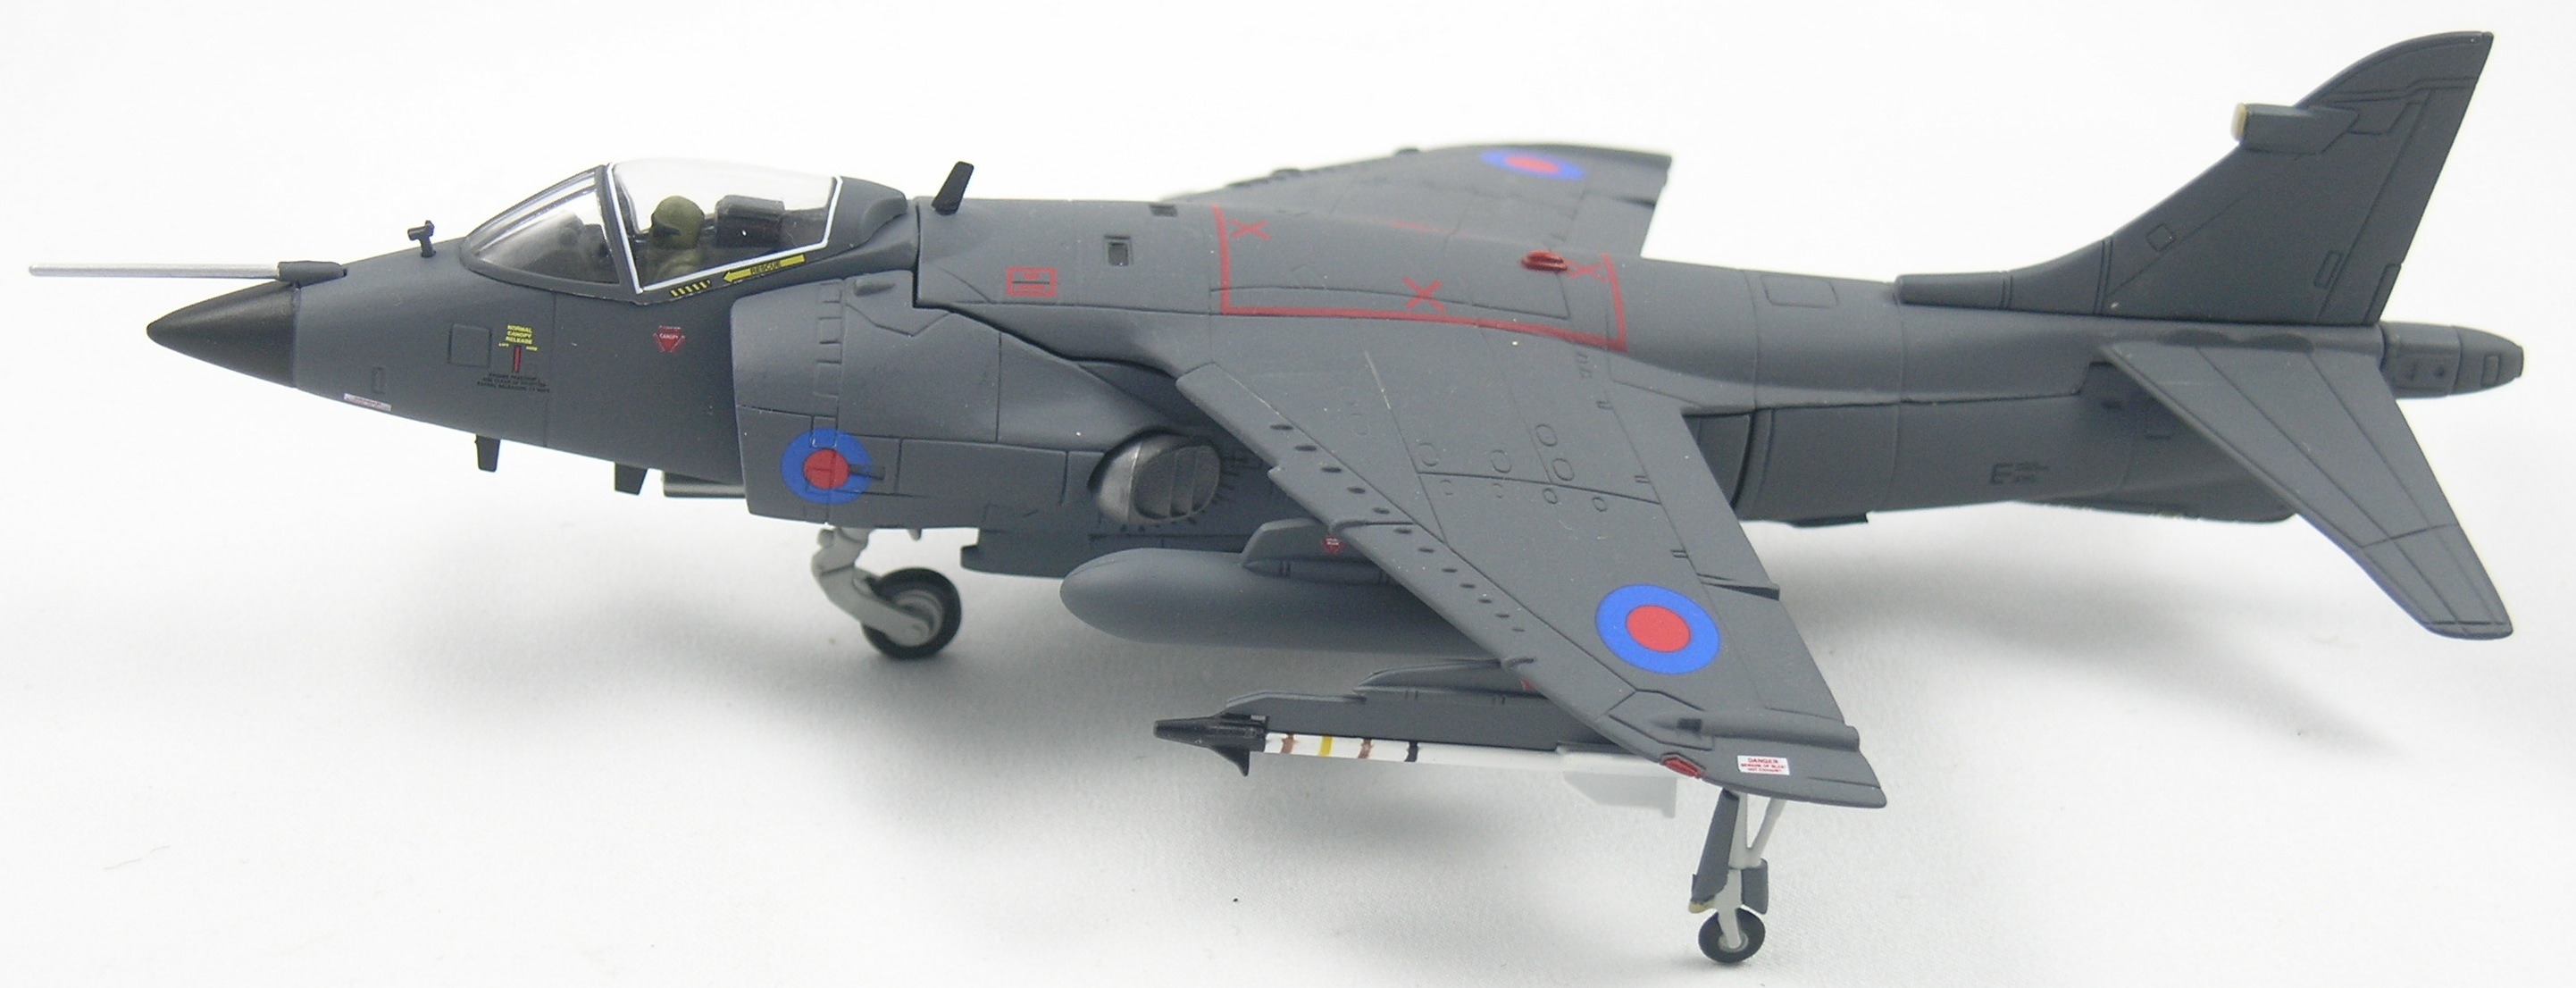 Harrier-AA32413-Top